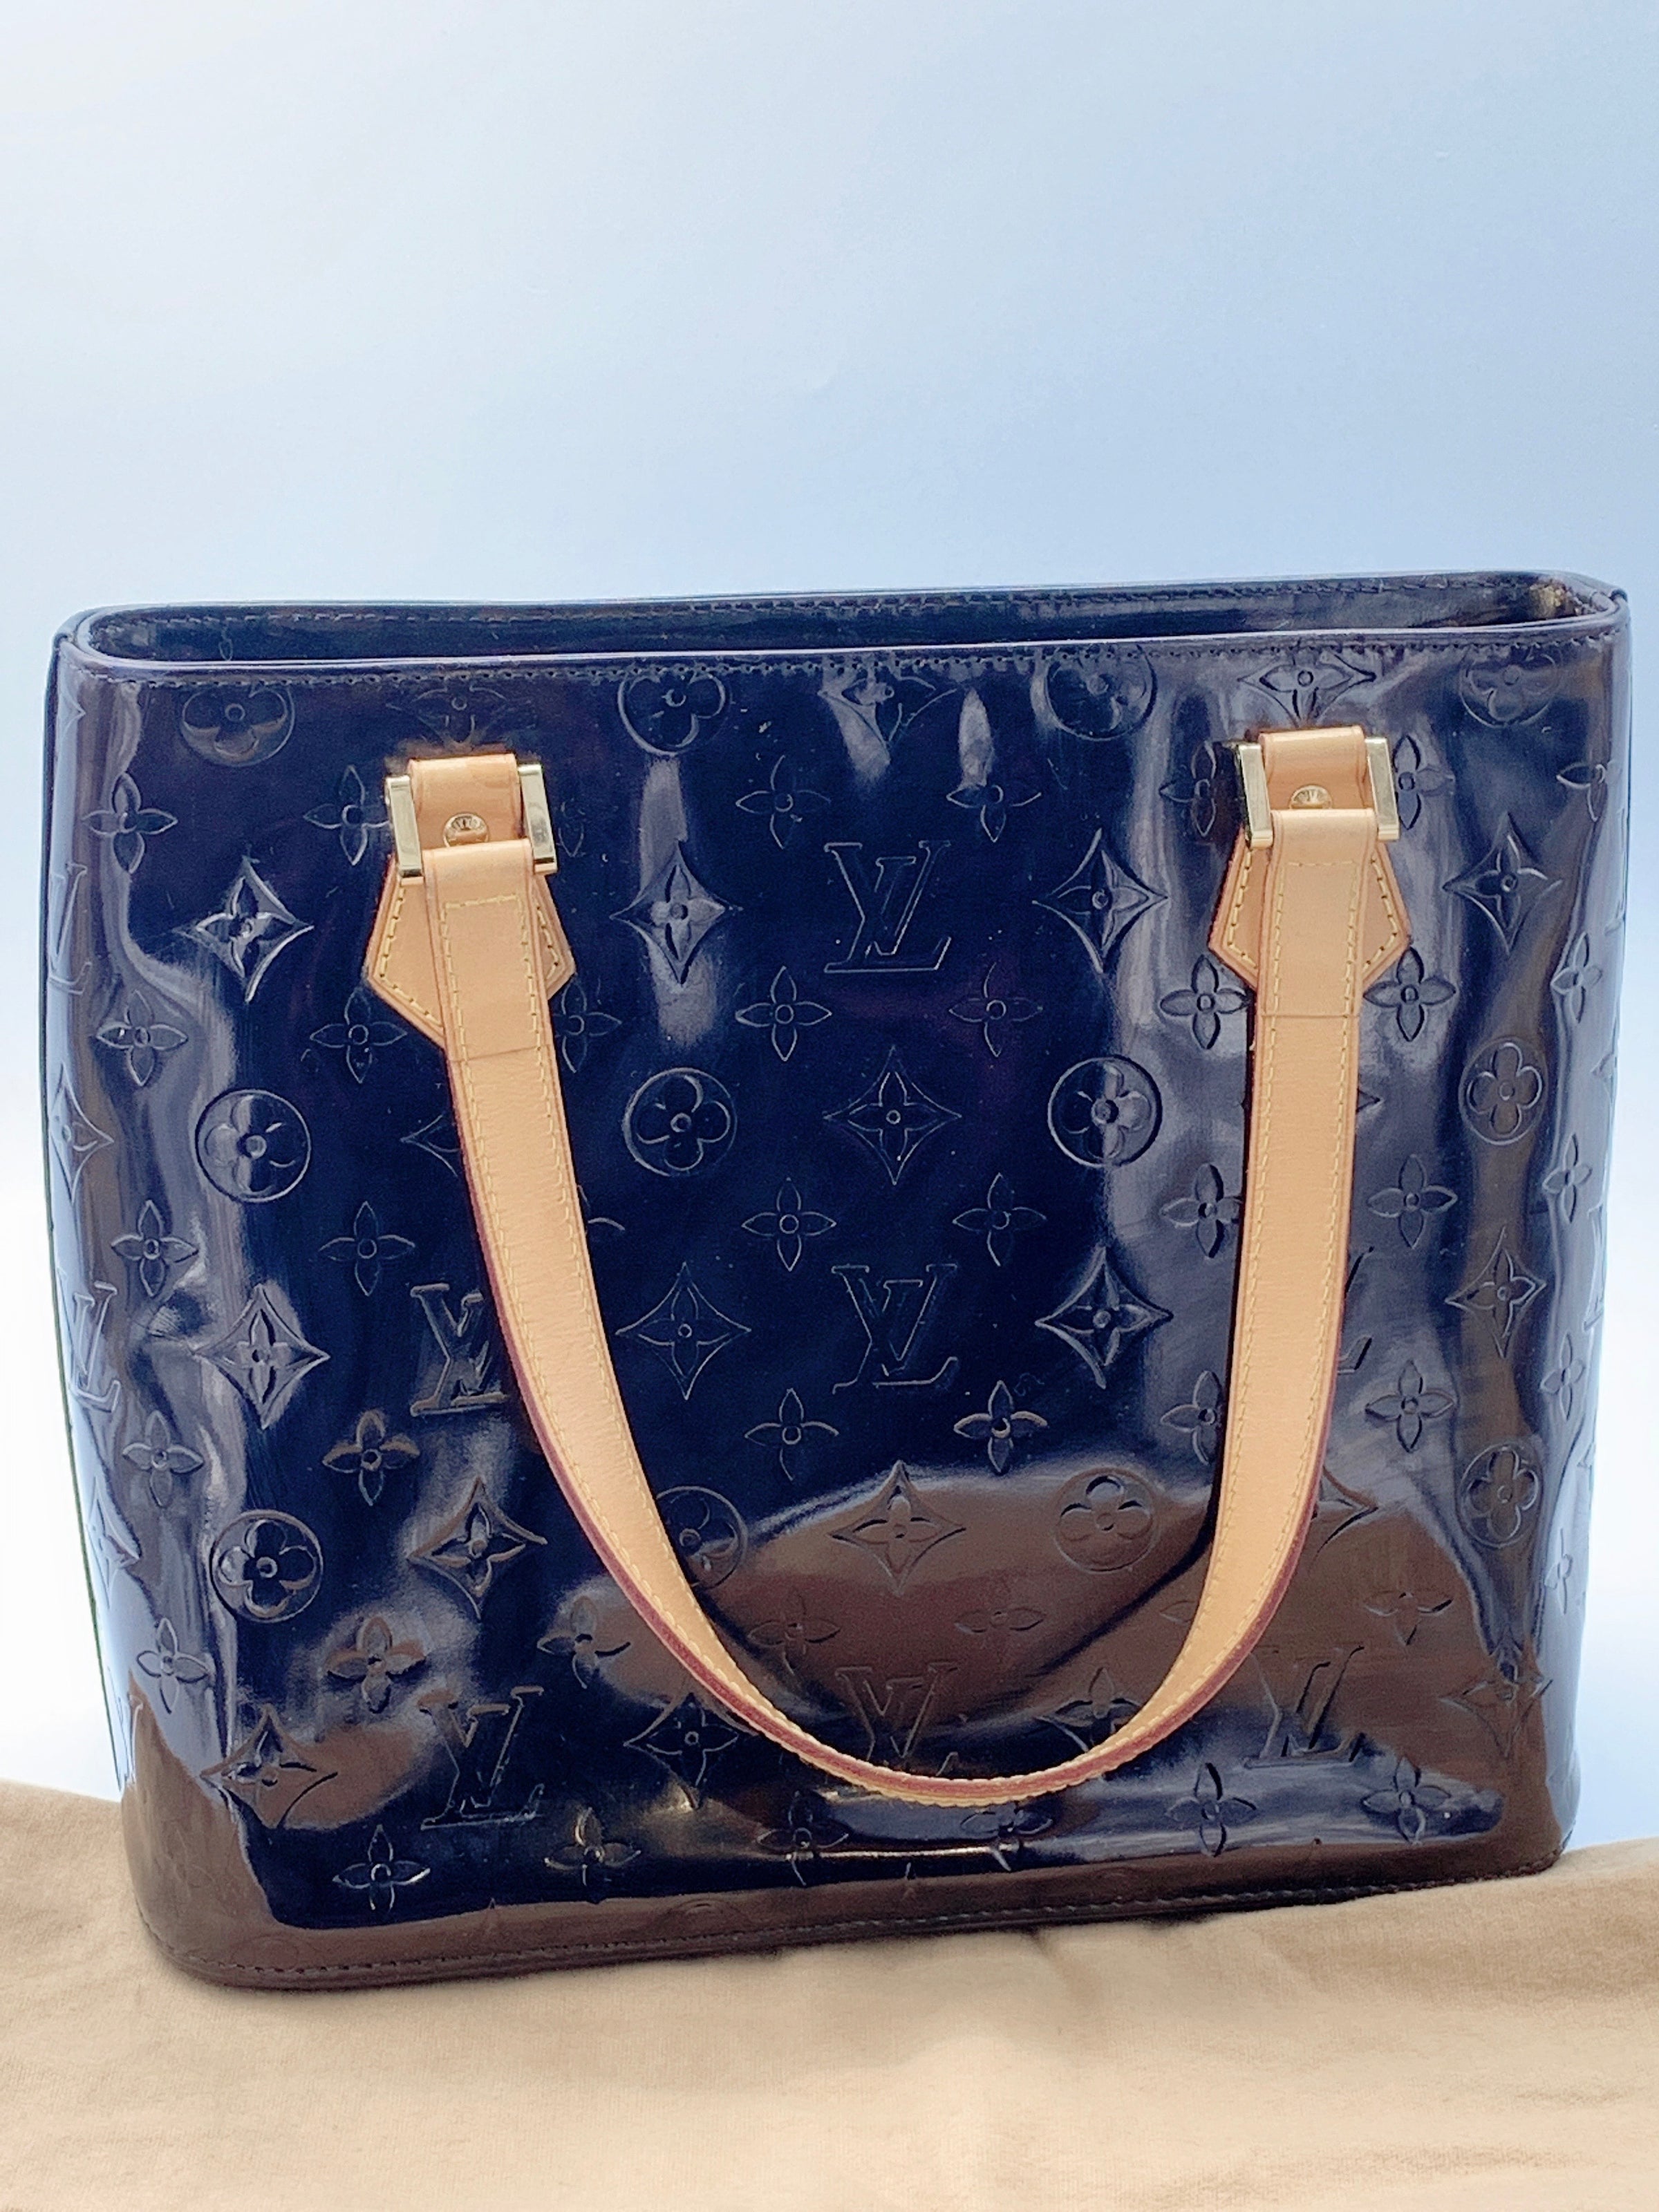 Louis Vuitton Monogram Vernis Houston Bag Cream